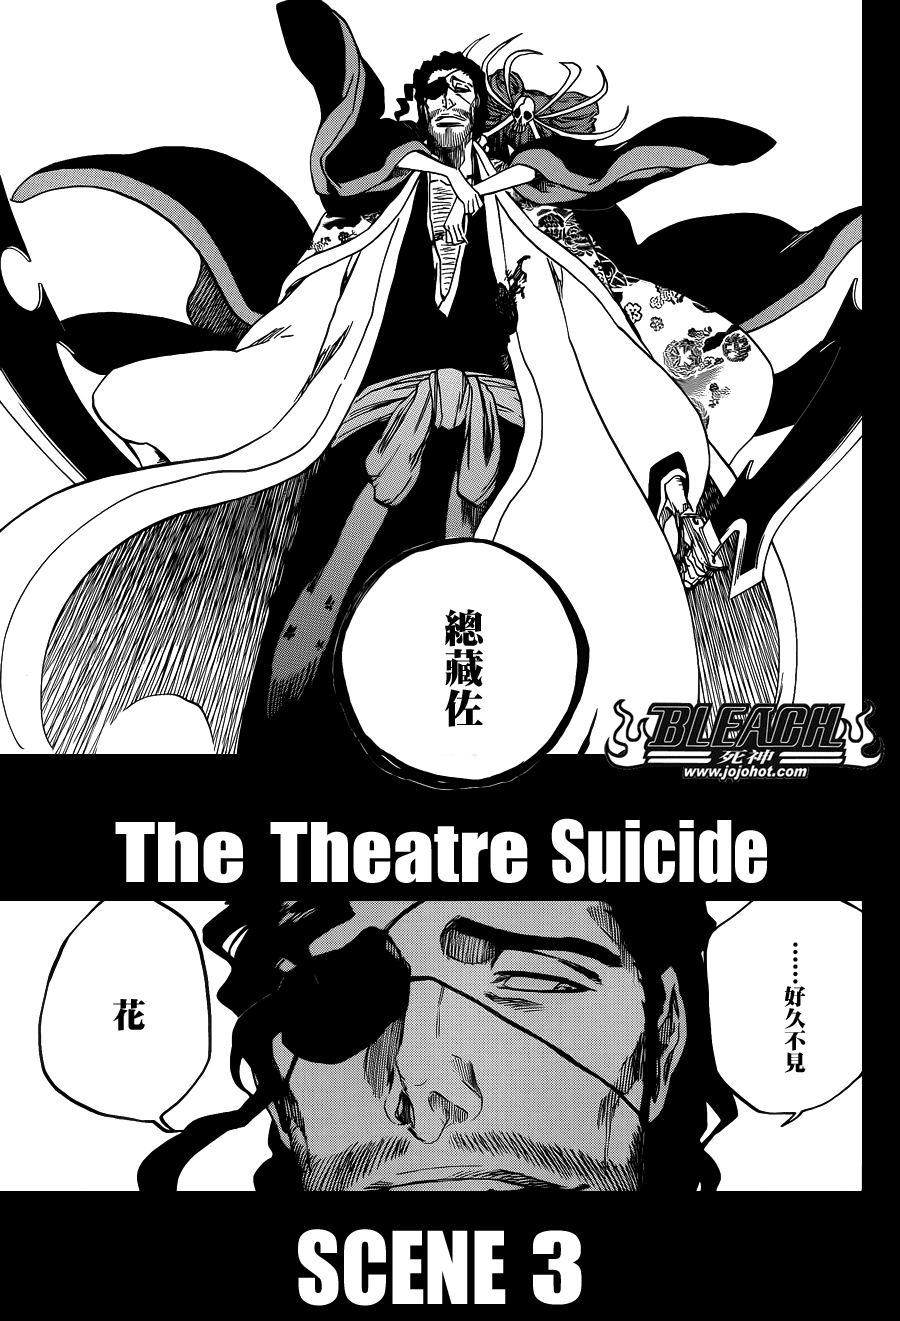 649The Theatre Suicide SCENE 3